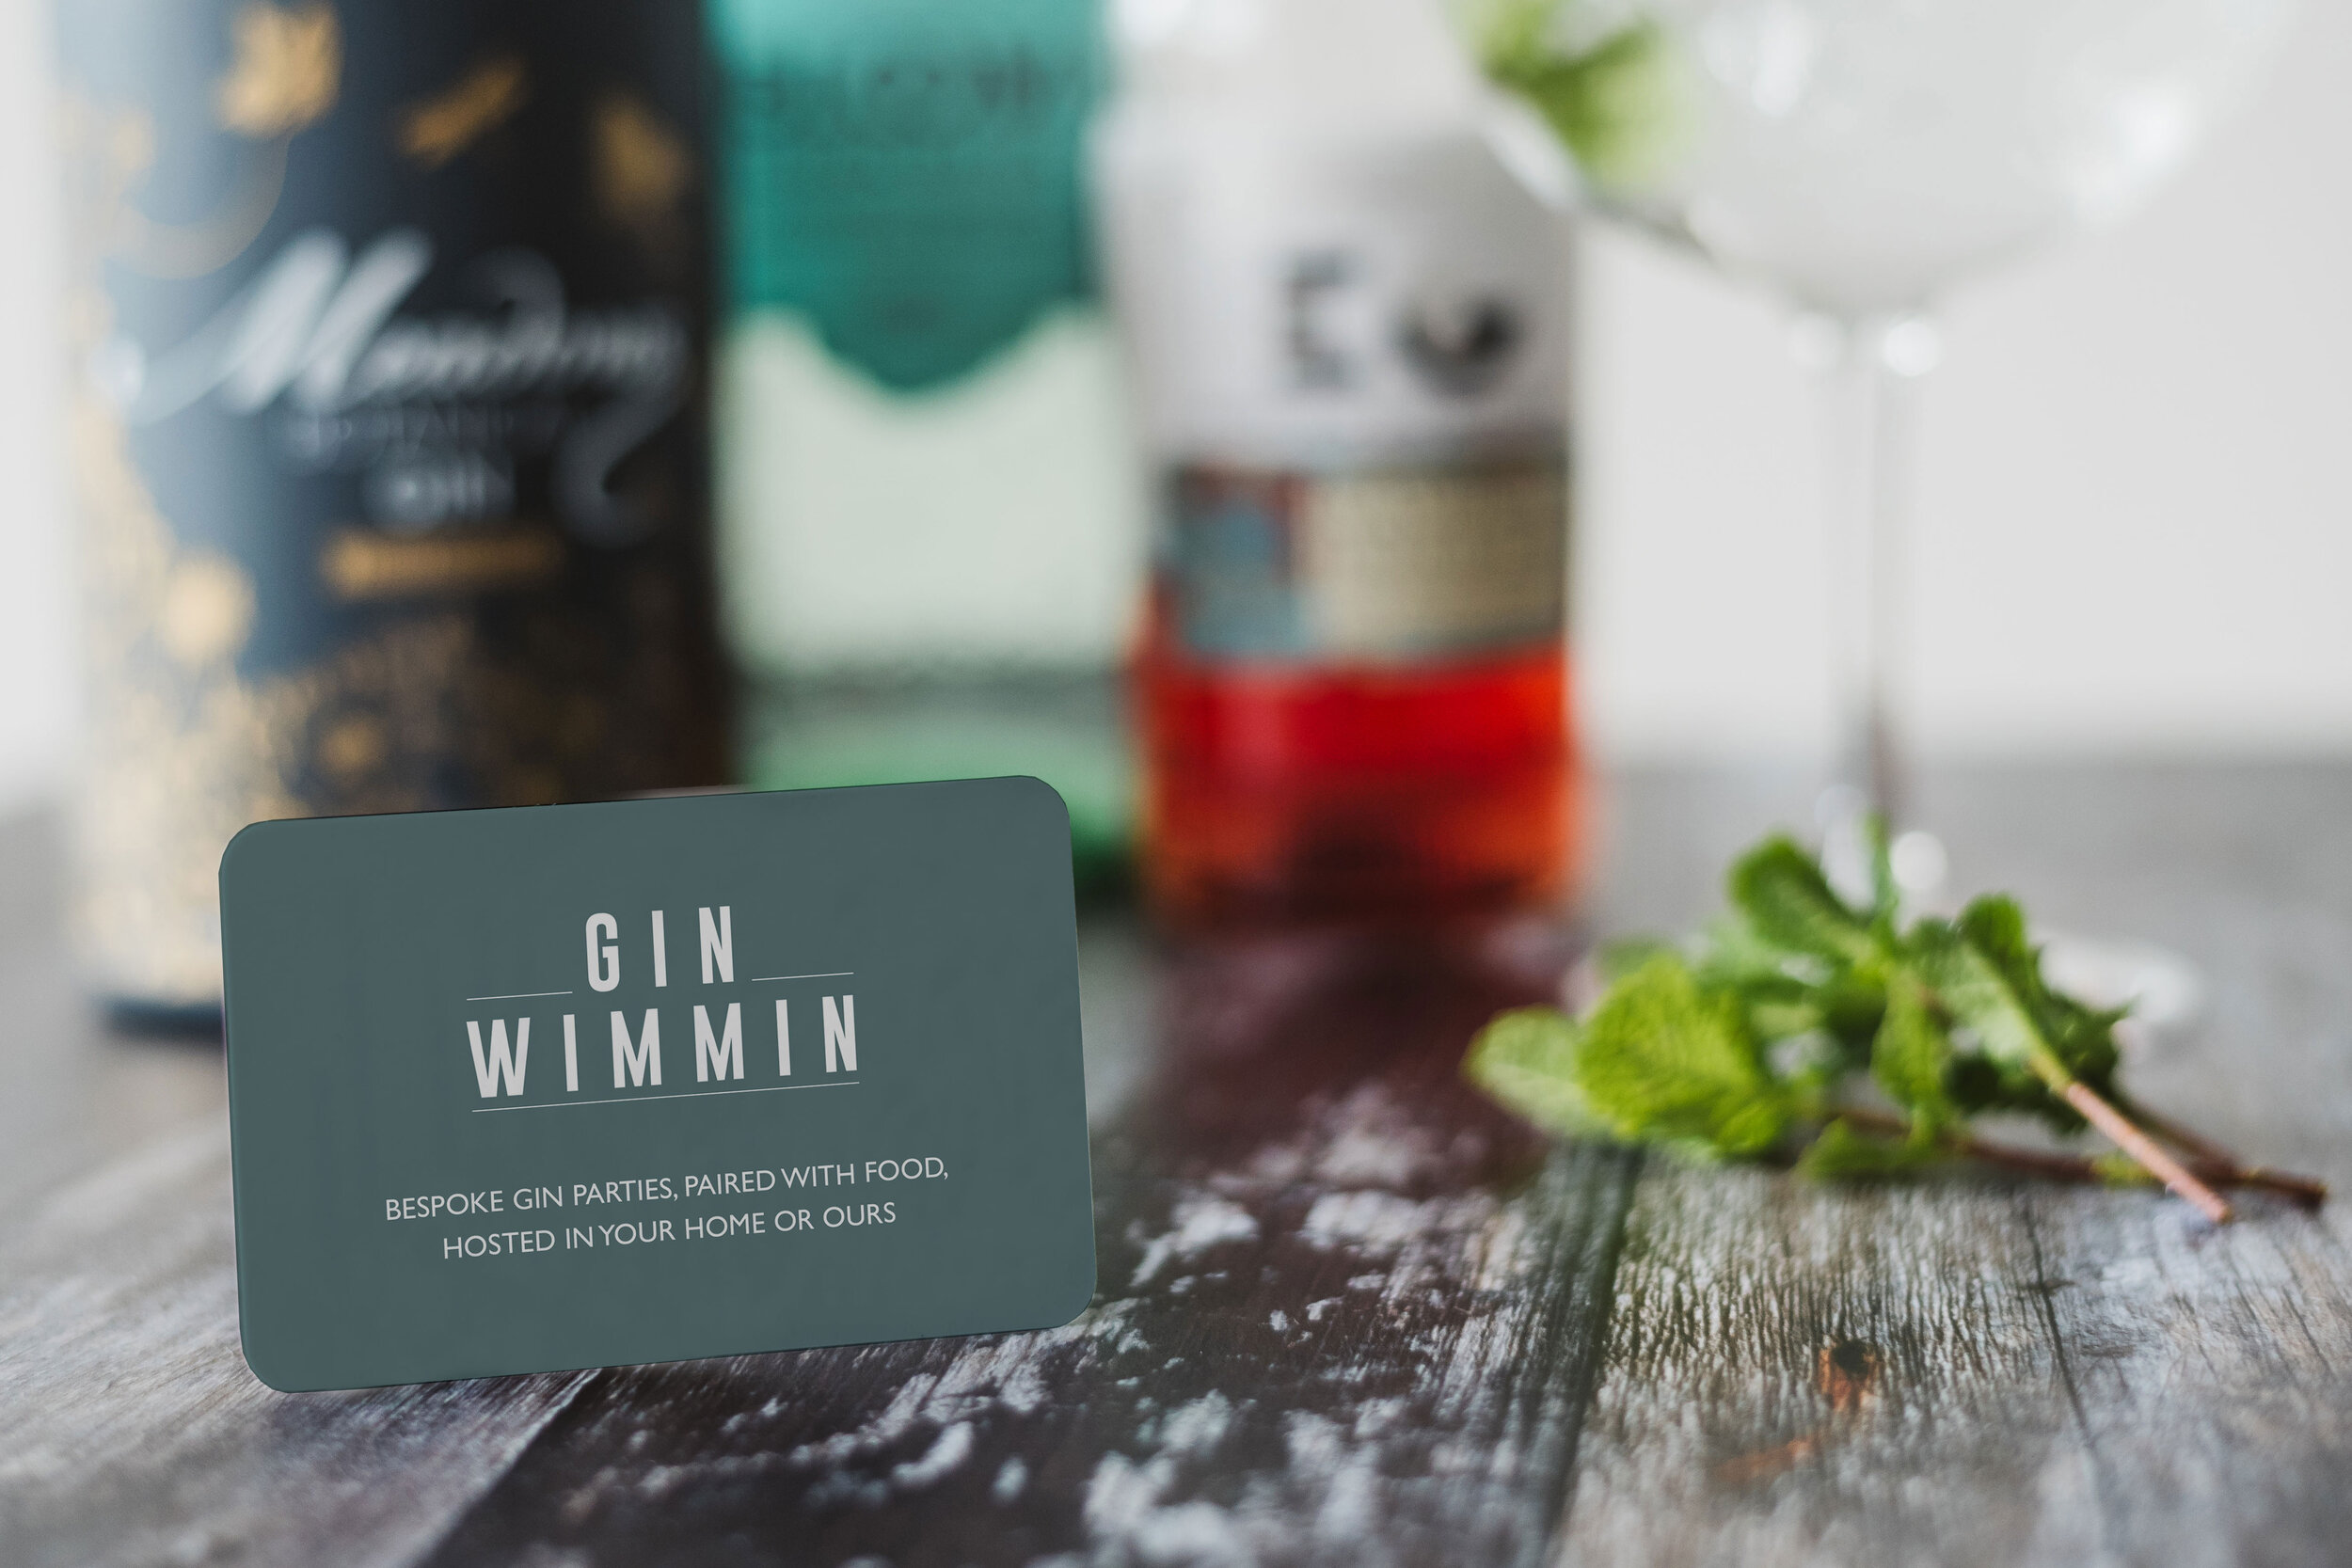 Gin-Wimmin-CARD_1800x1200.jpg